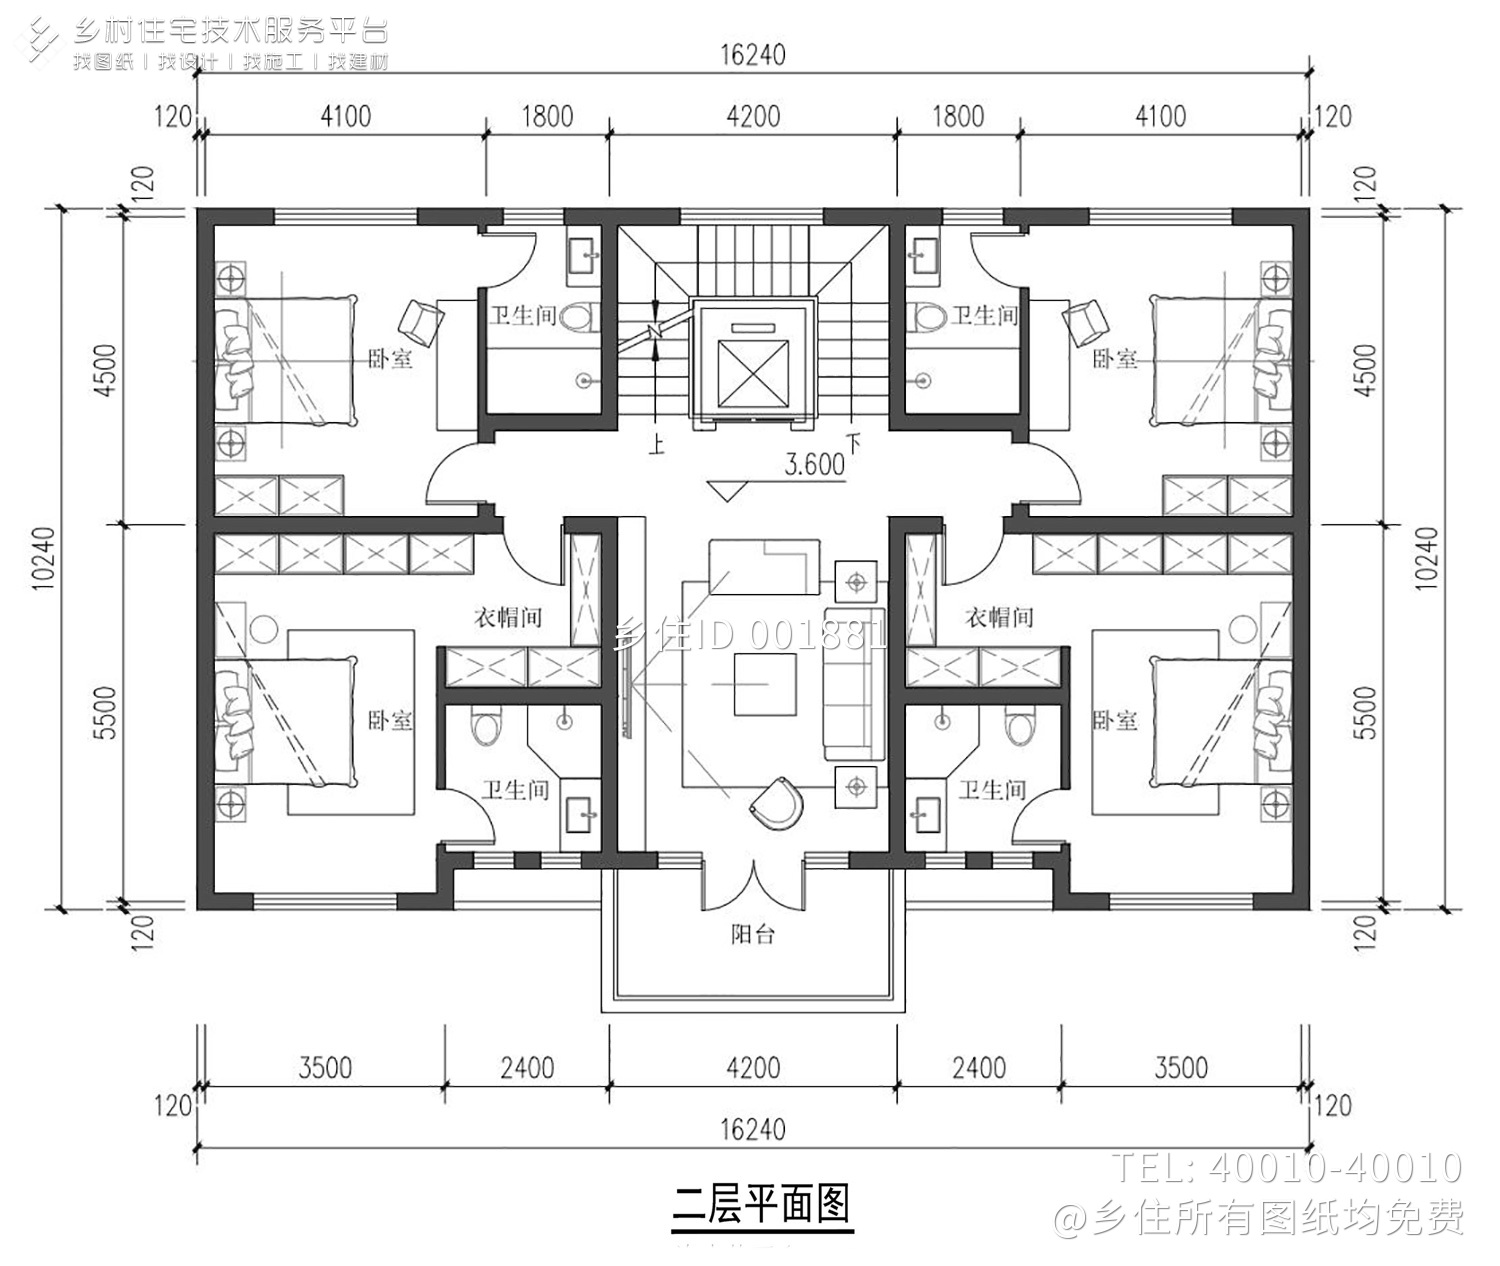 江苏南通石家欧式别墅设计图纸